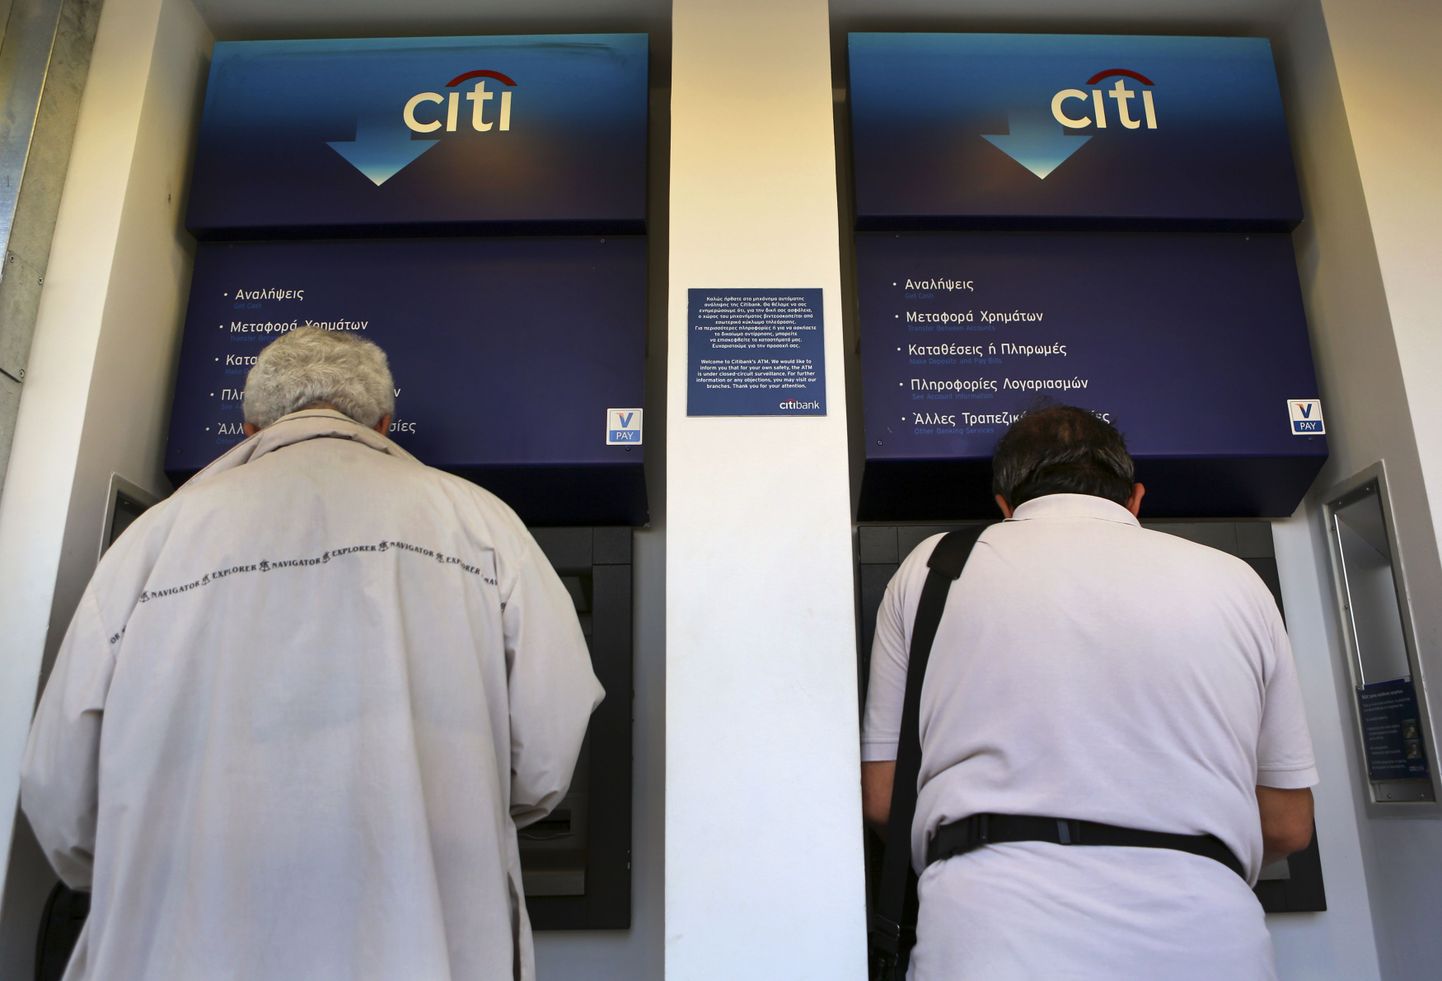 Kreeklased võtavad raha pankadest välja